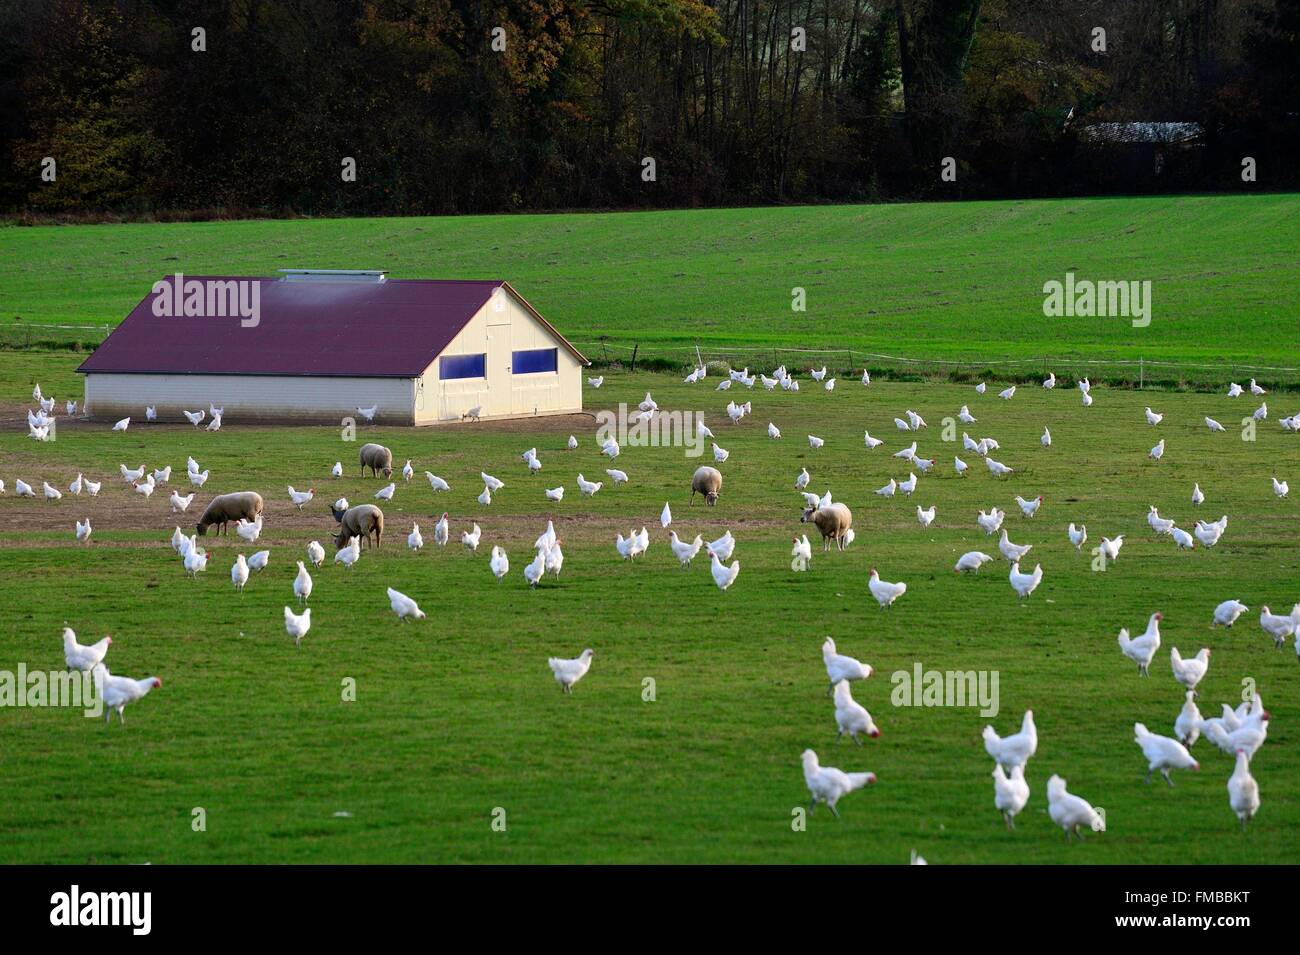 France, Saone et Loire, Sens-sur-Seille, Poulet de Bresse AOC chicken farm, free range chicken Stock Photo